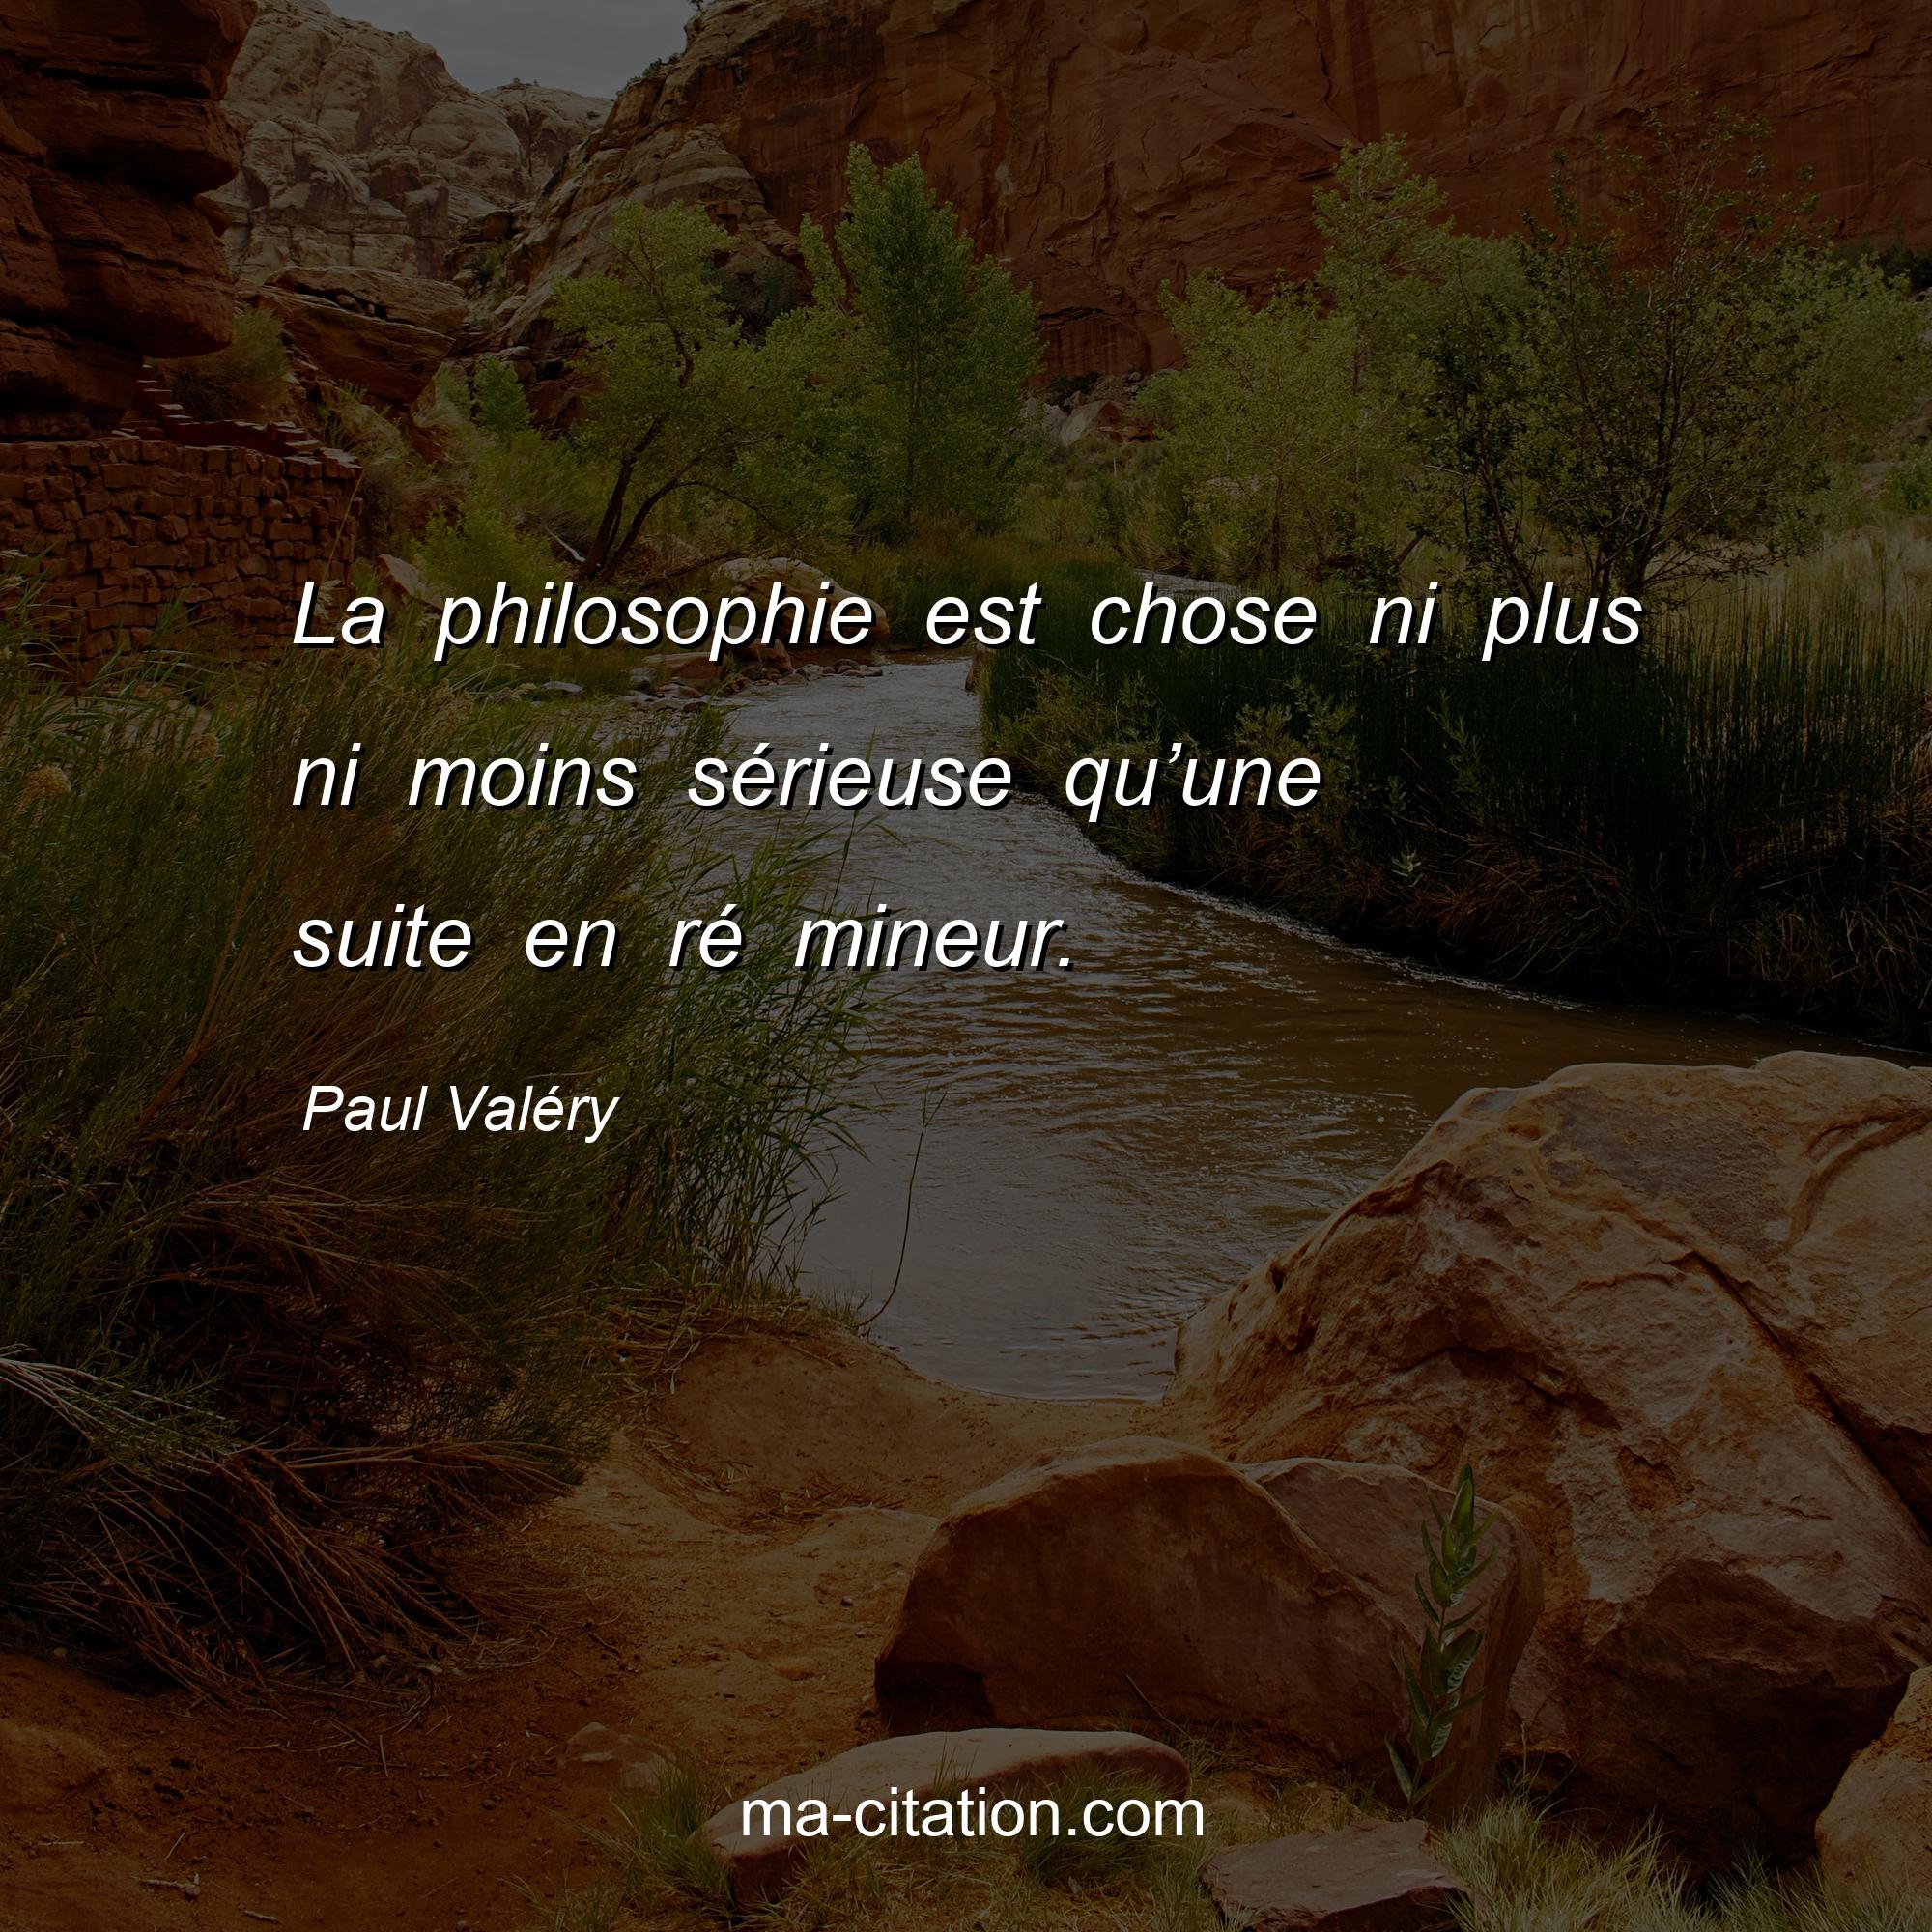 Paul Valéry : La philosophie est chose ni plus ni moins sérieuse qu’une suite en ré mineur.